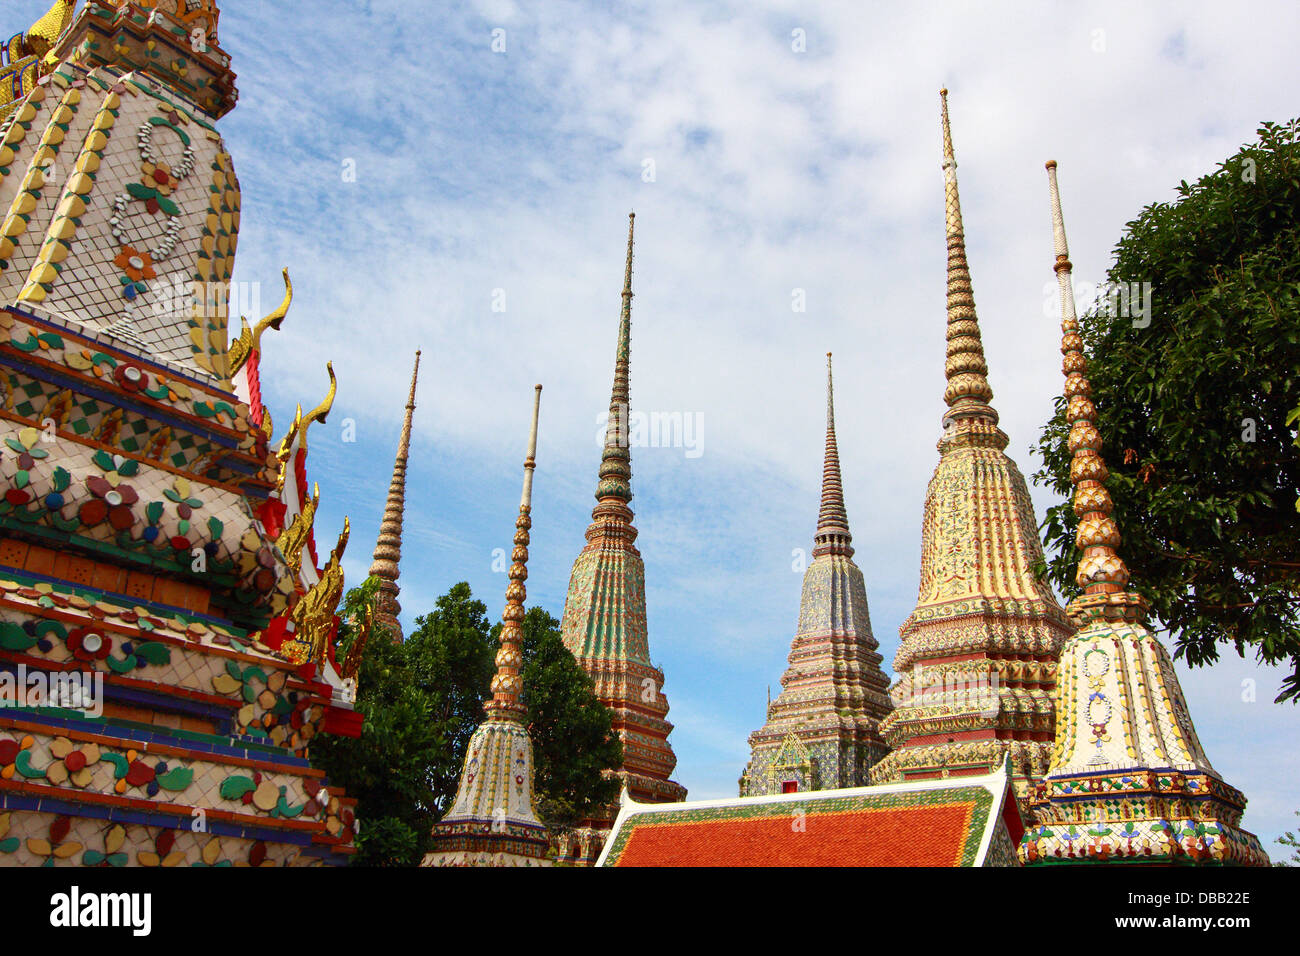 Wat Pho à Bangkok, Thaïlande. 'Wat' signifie temple en thaï. Le temple est l'un des sites touristiques les plus célèbres. Banque D'Images